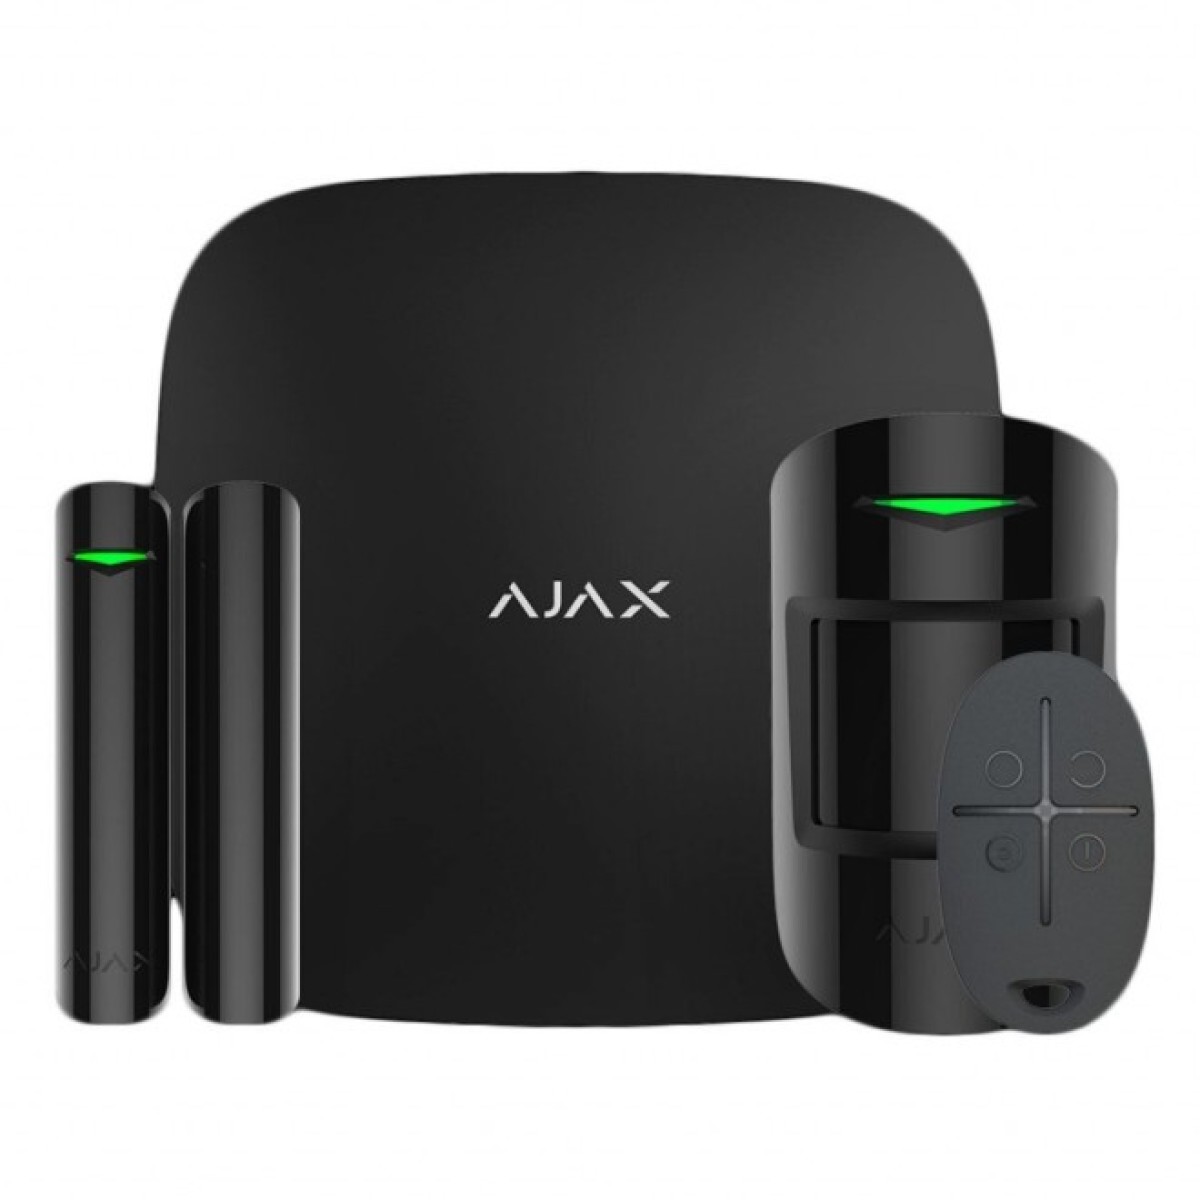 Комплект охранной сигнализации Ajax StarterKit2 black 256_256.jpg